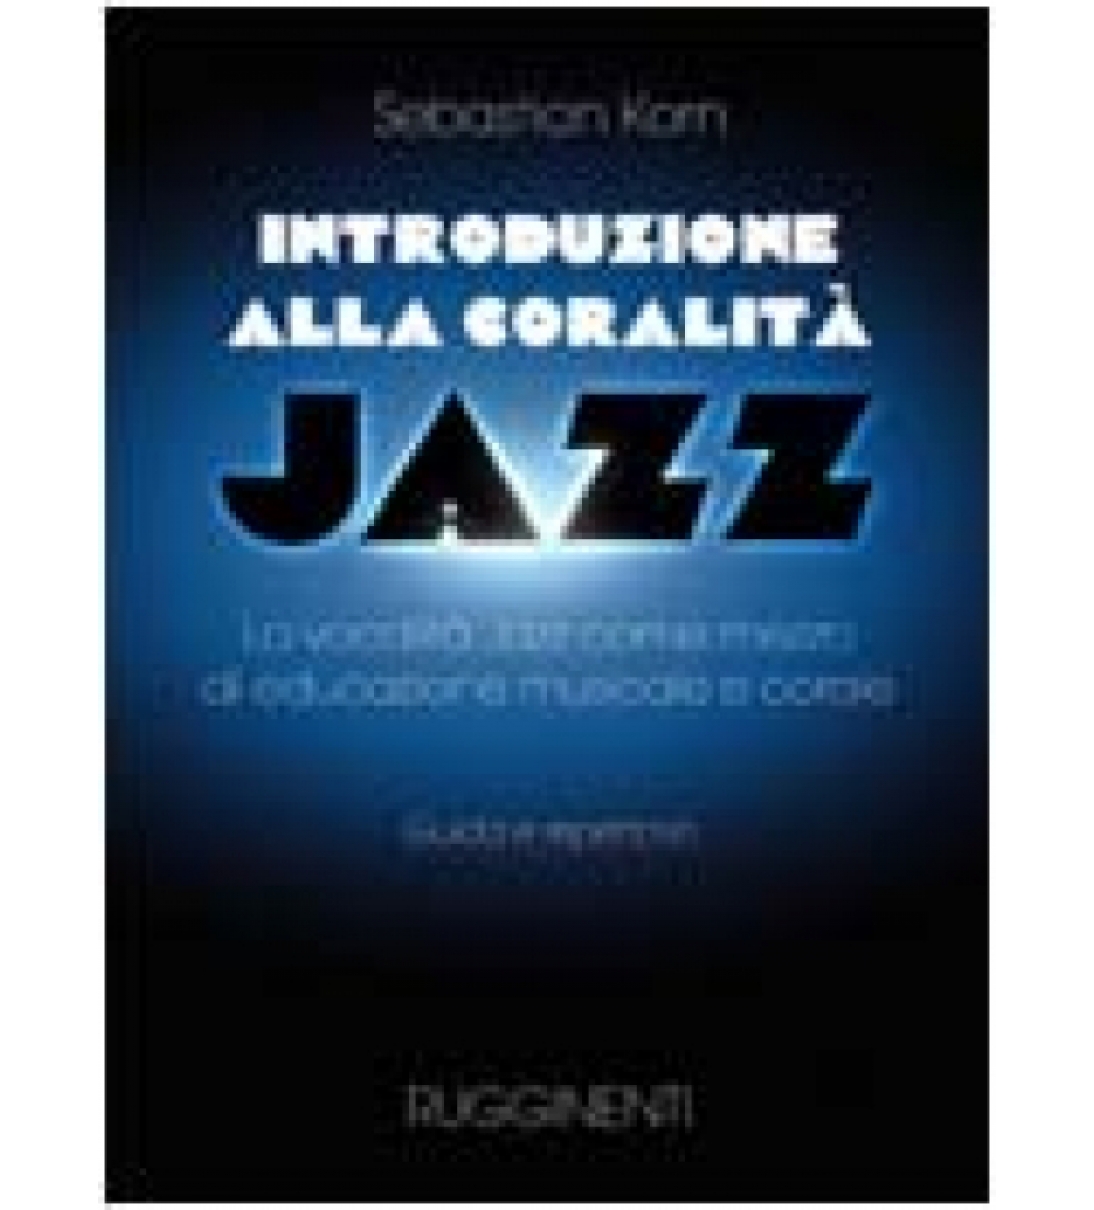 INTRODUZIONE ALLA CORALITÀ - La vocalità jazz come mezzo d'educazione musicale e corale